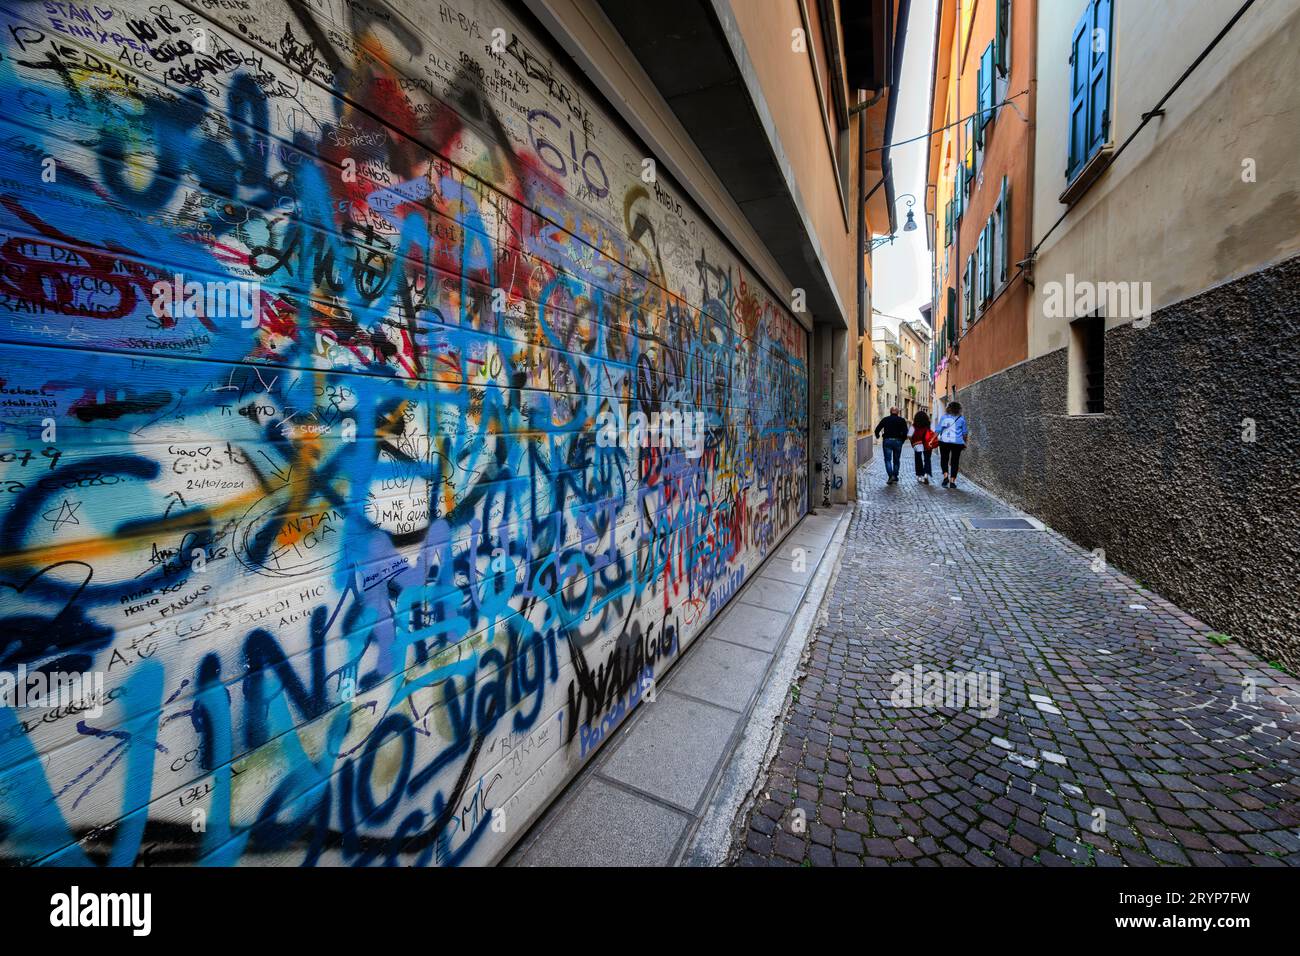 Cartellini e scritte su una porta del garage che si affaccia su uno stretto vicolo italiano. Vandalismo urbano. Foto Stock